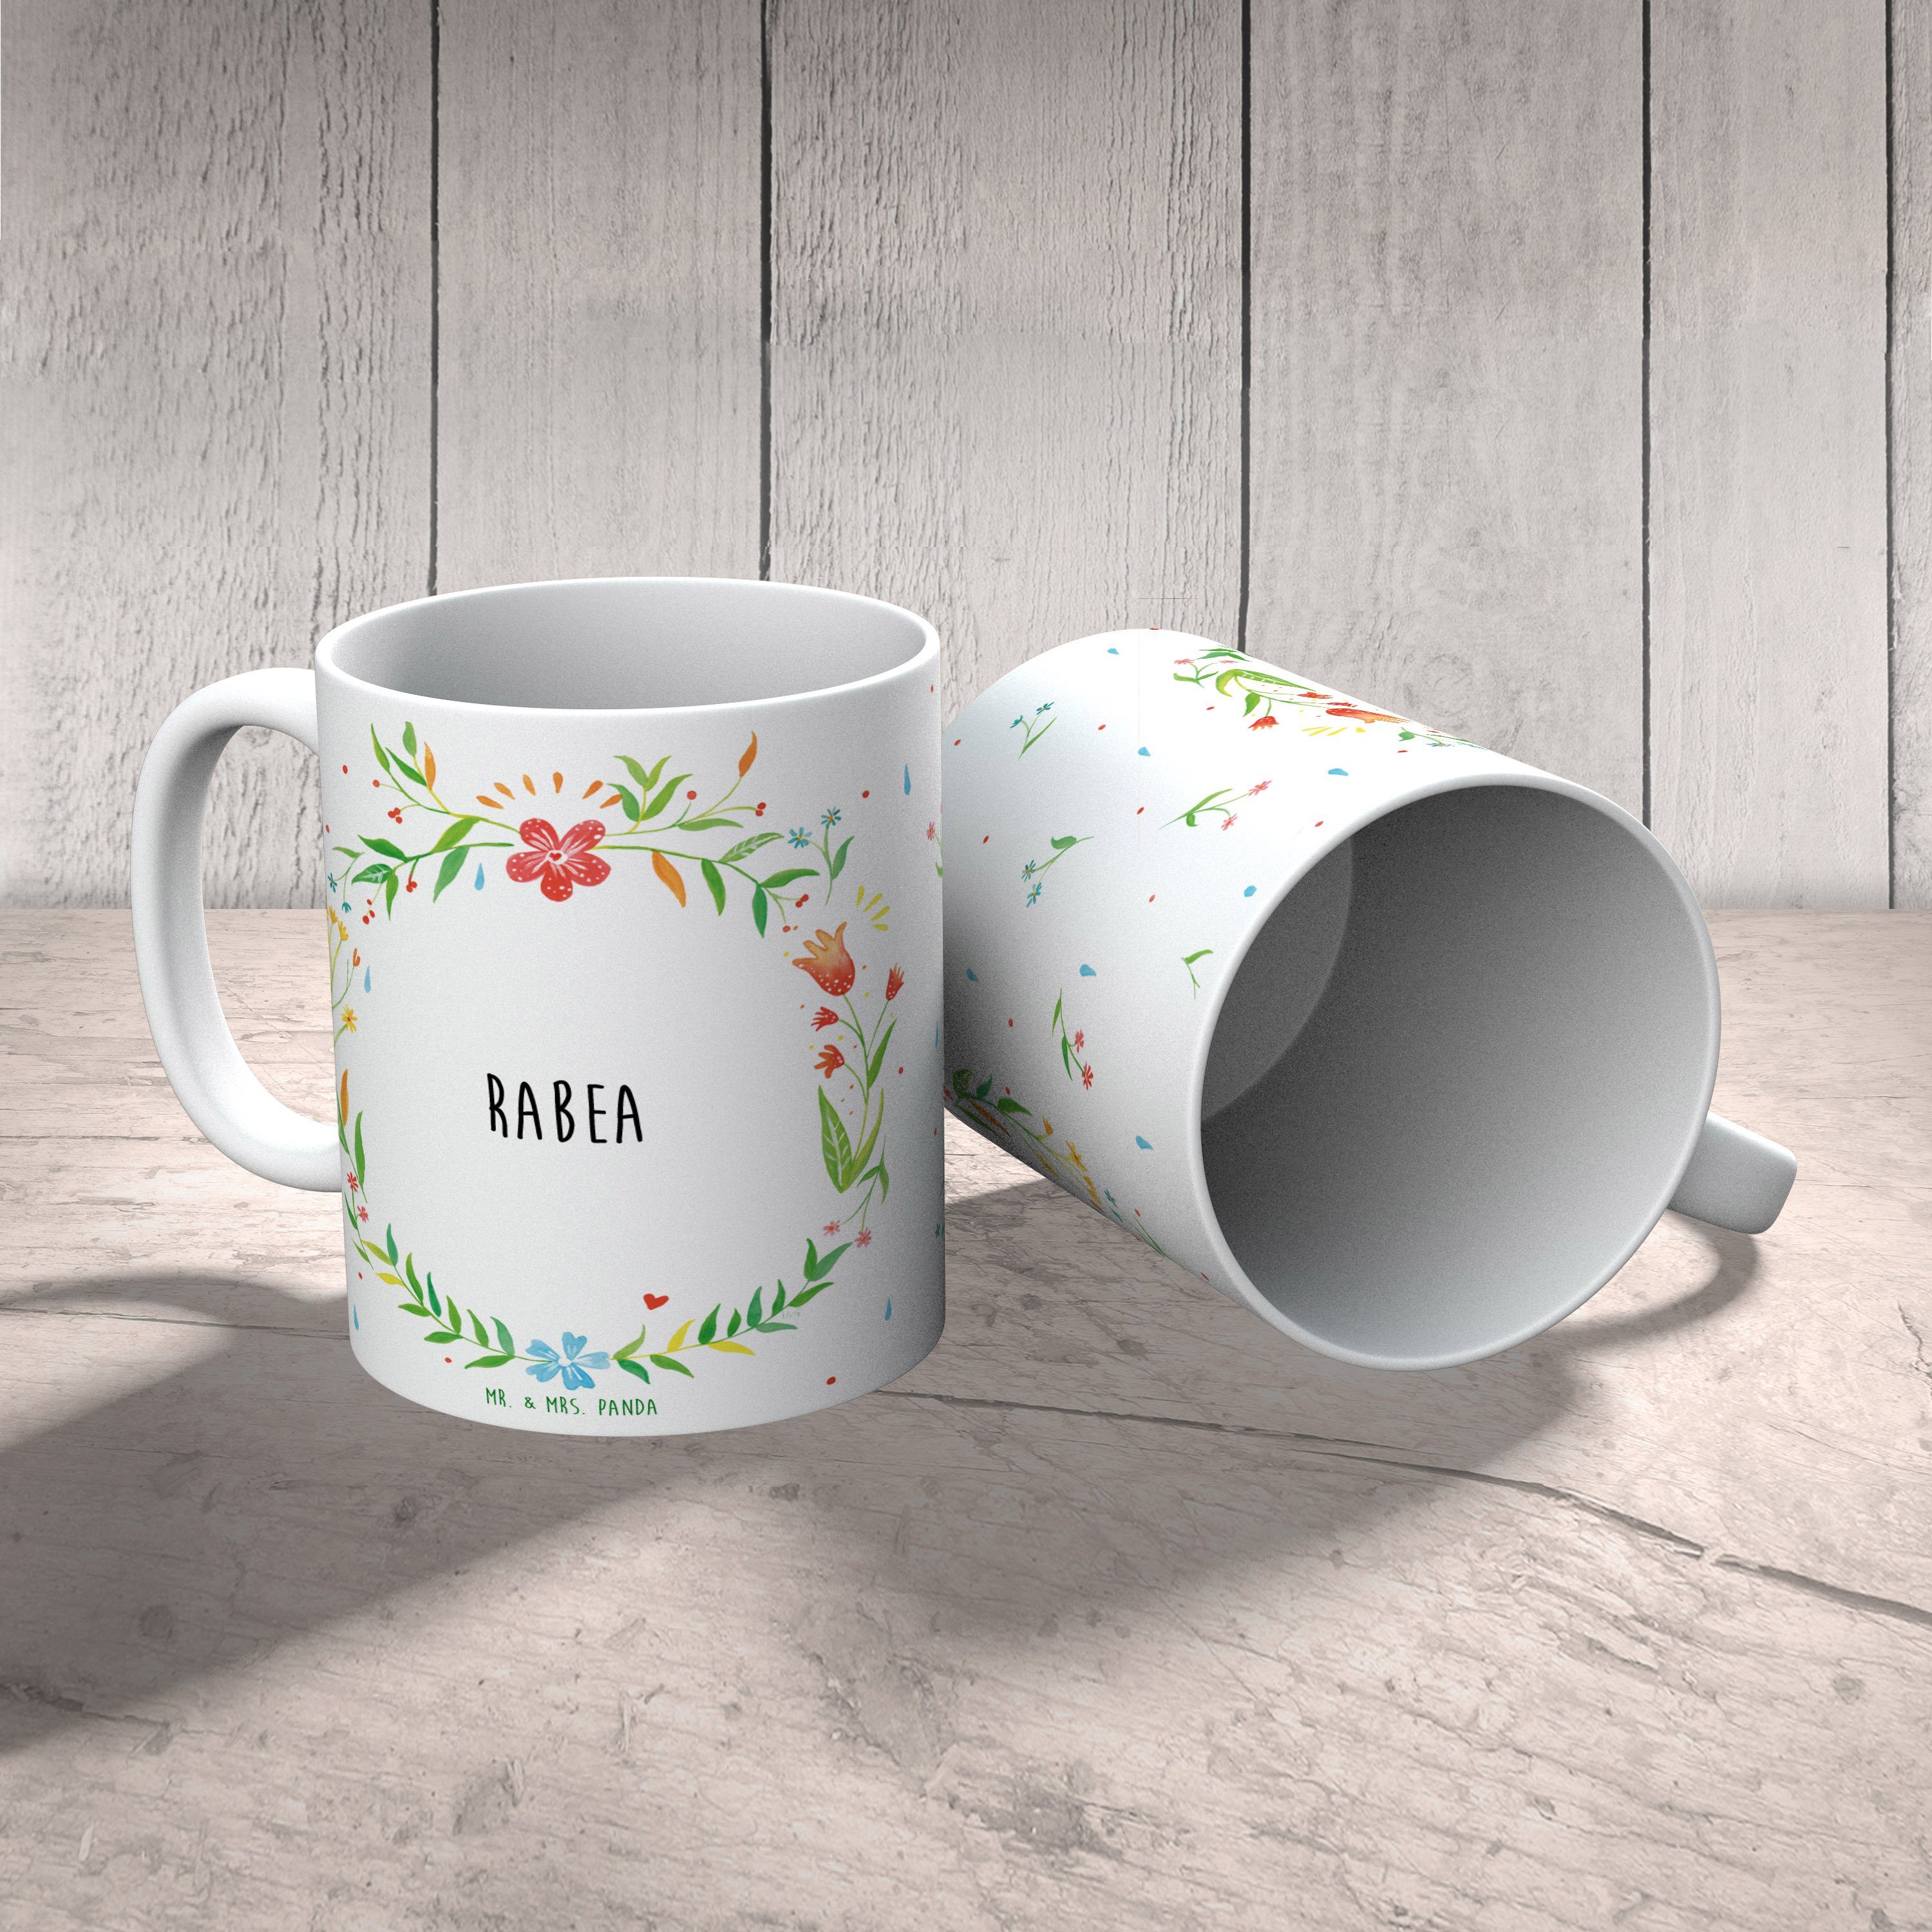 Mr. & Mrs. Panda Keramik Porzellantasse, Geschenk, Tasse, - Geschenk Tasse Kaffeebecher, Tasse, Rabea